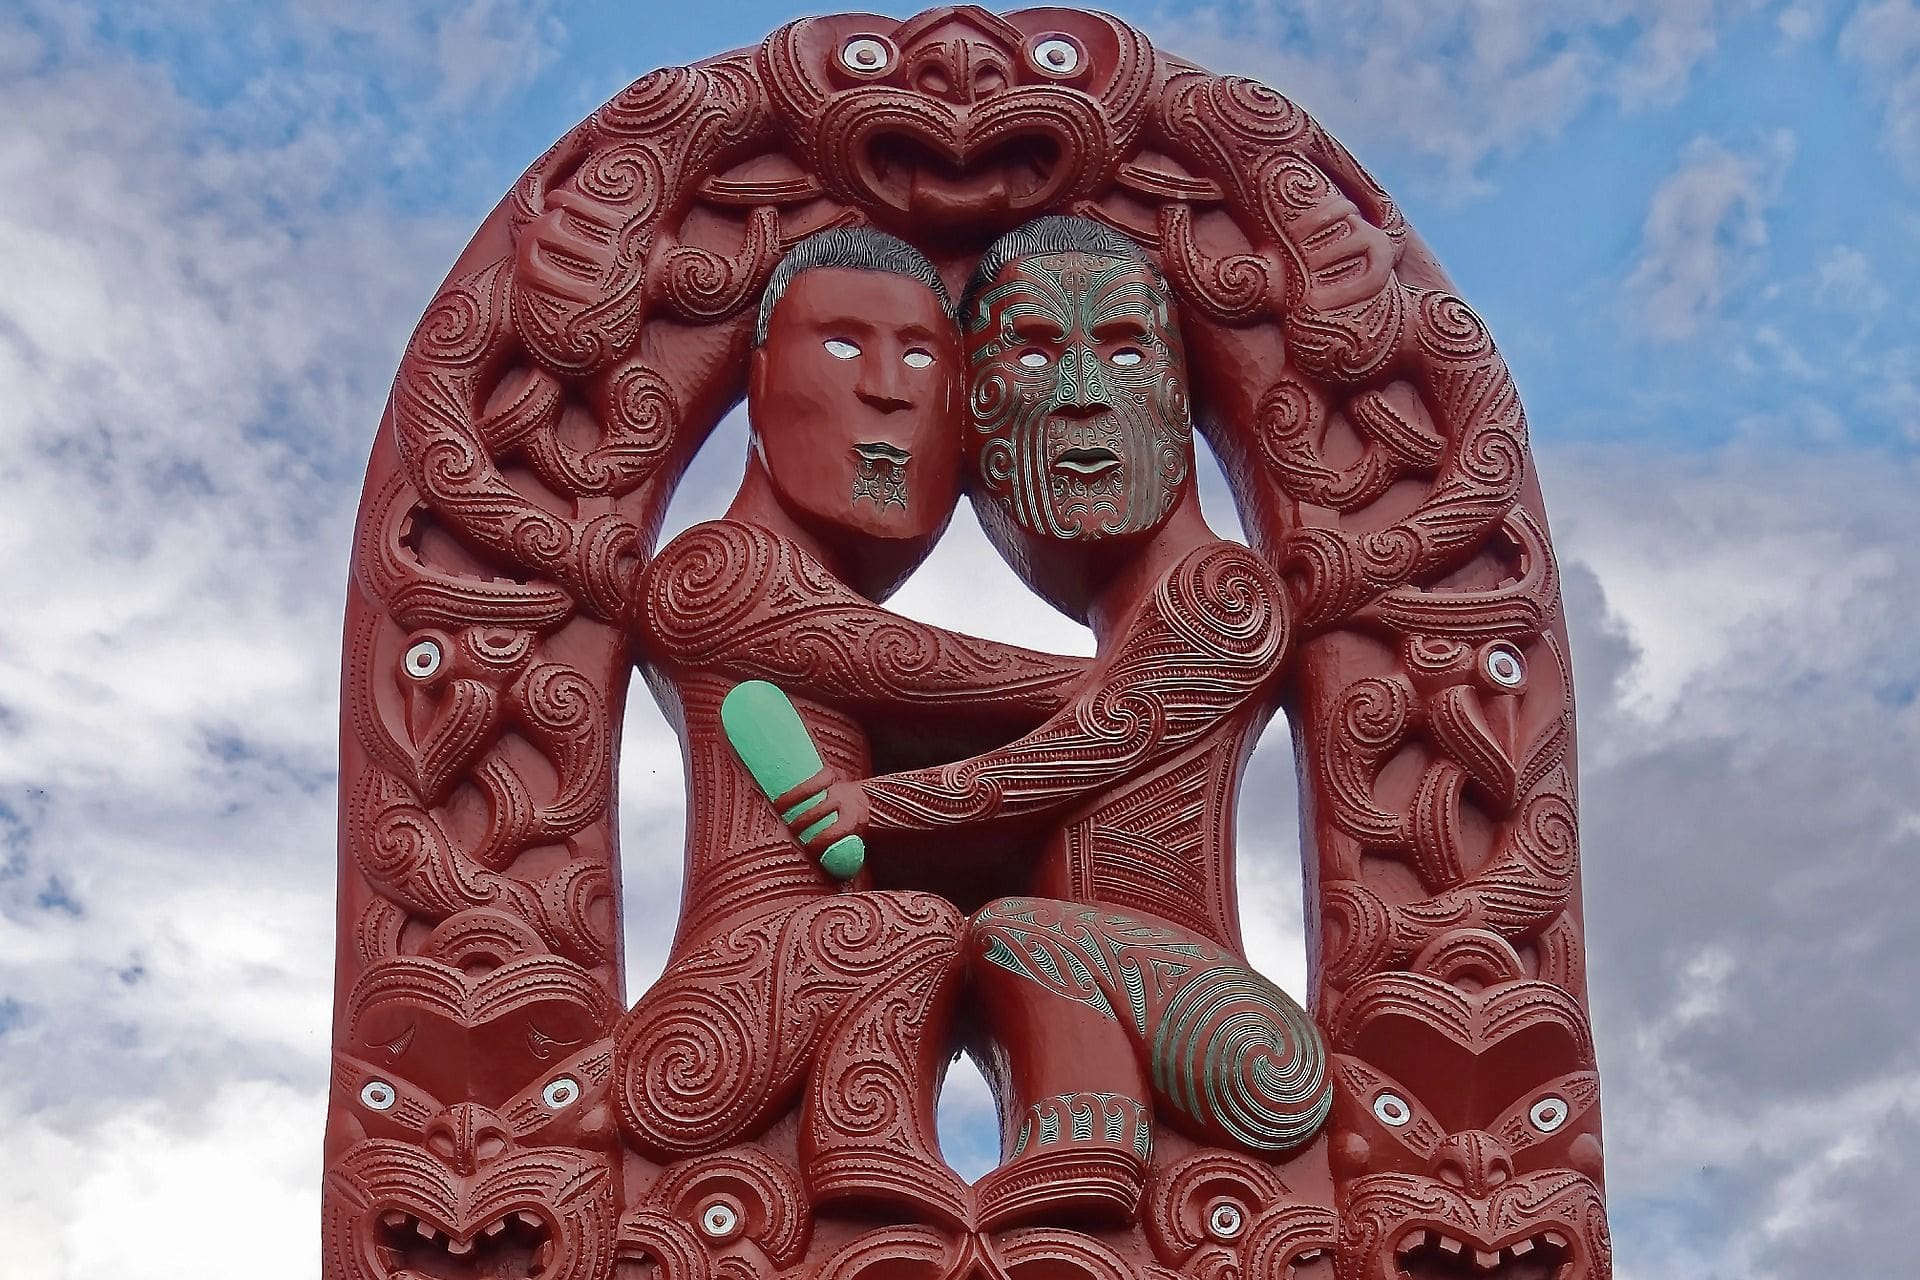 Rotorua Maori Carving